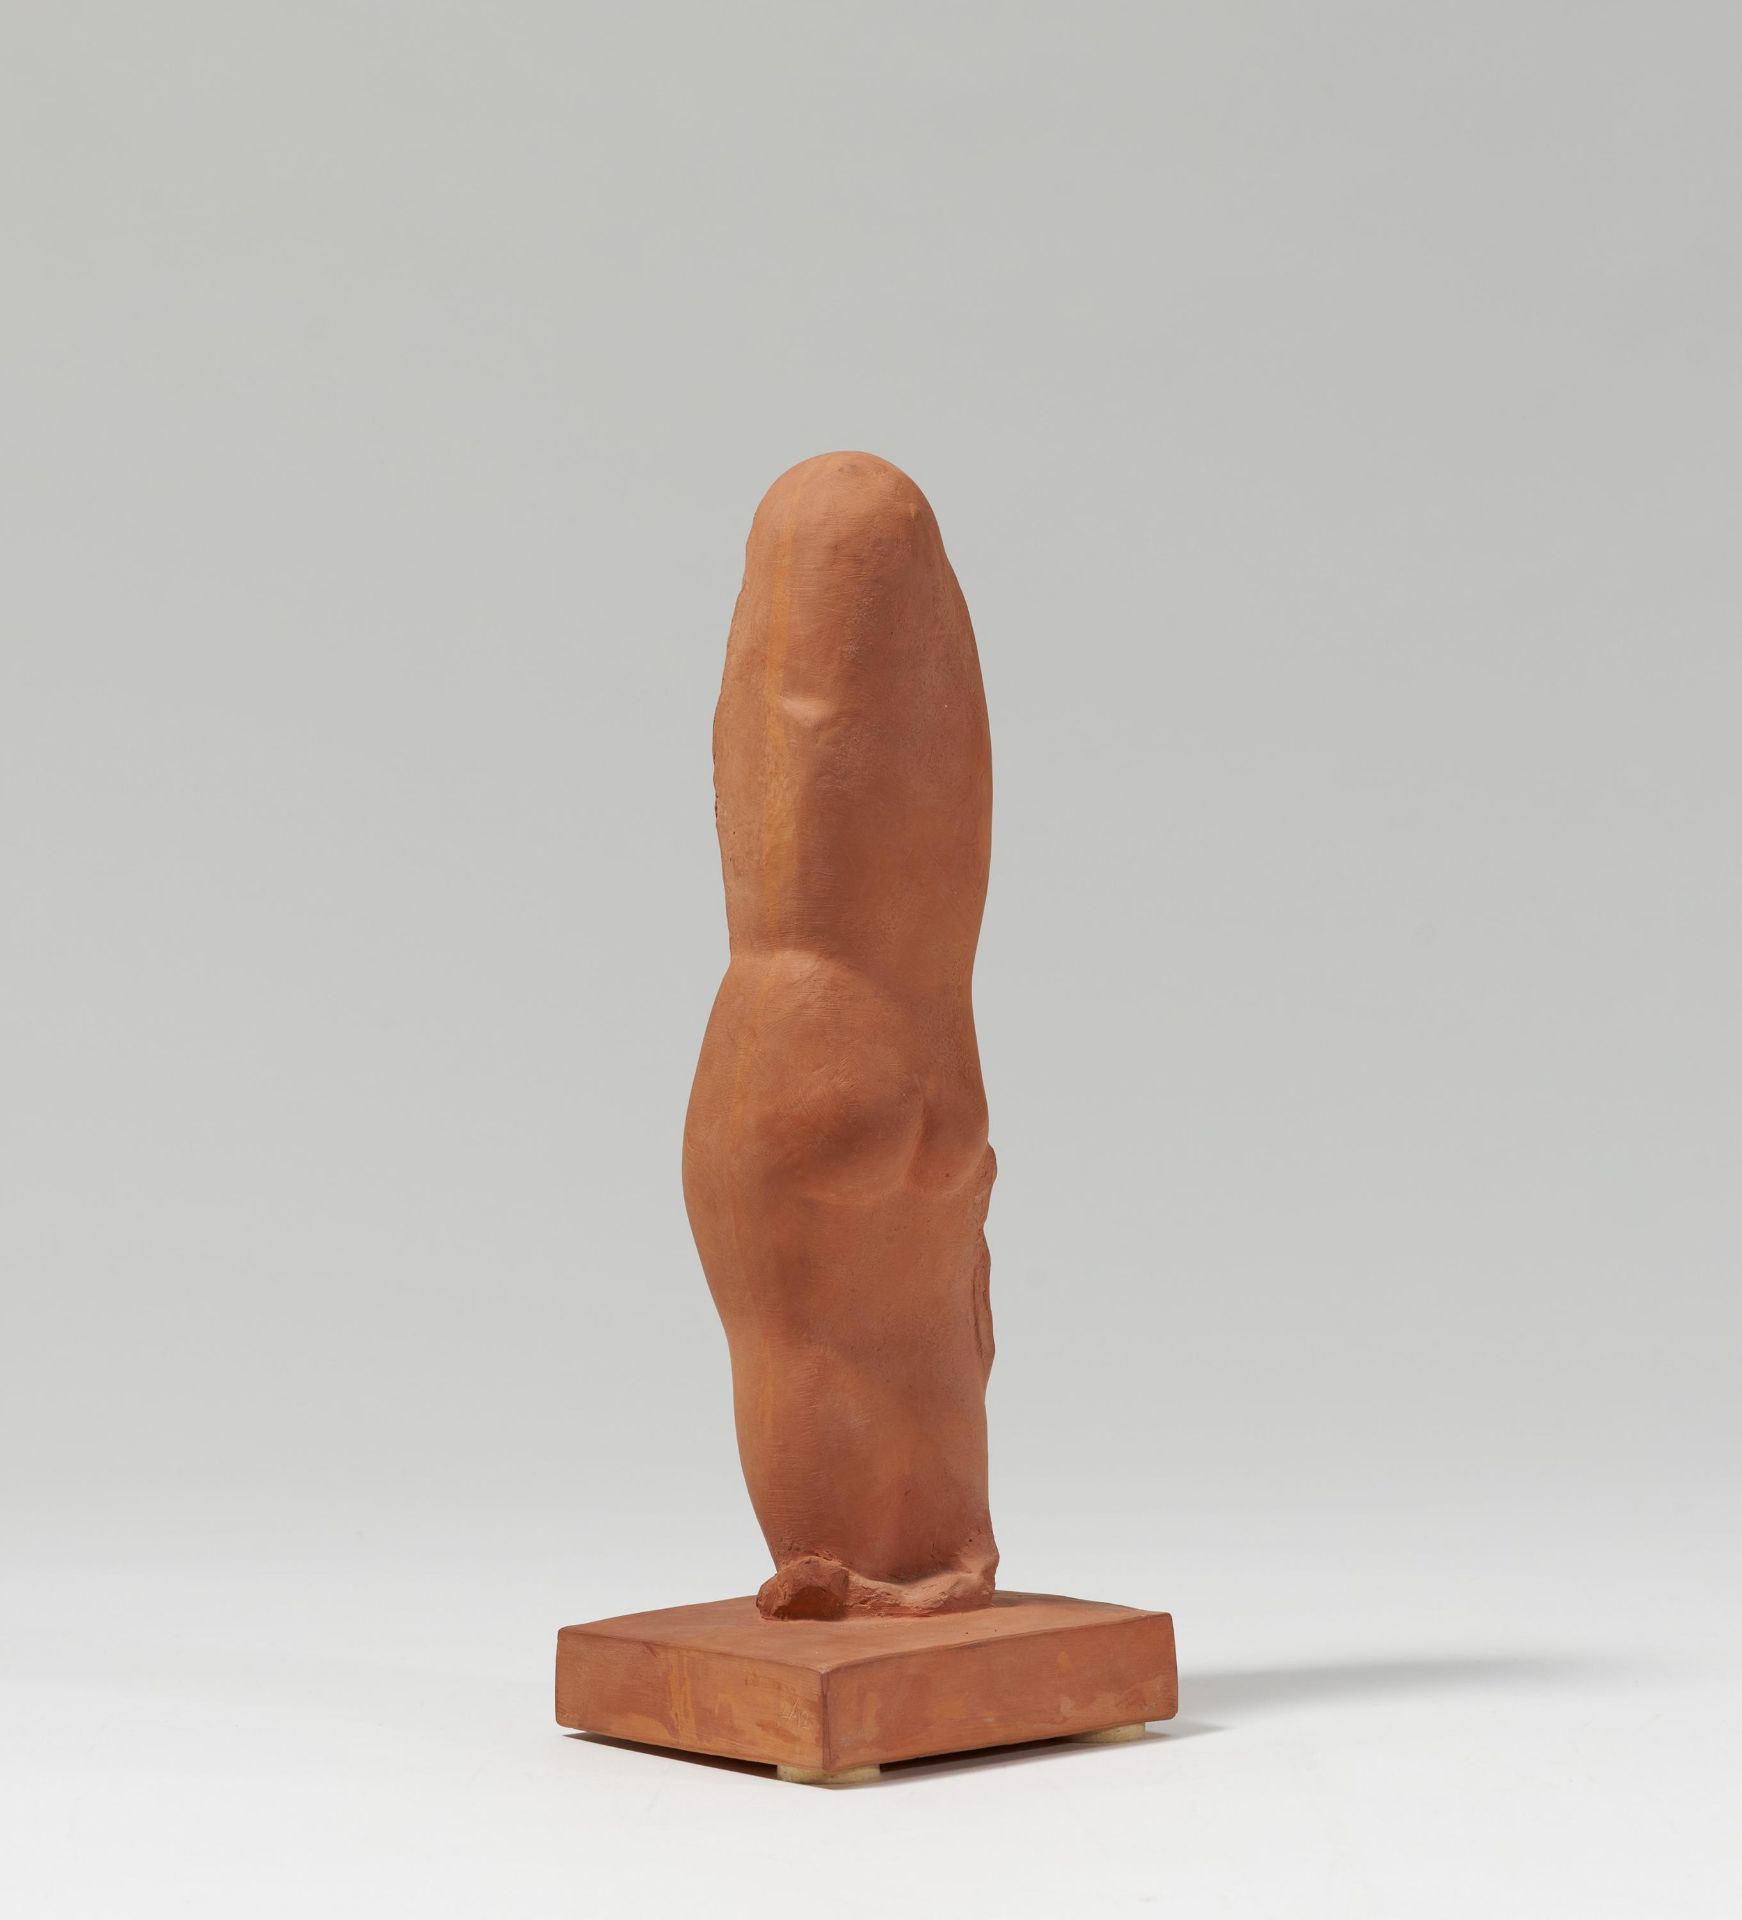 Joseph Csaky: Femme nue debout - Image 3 of 5